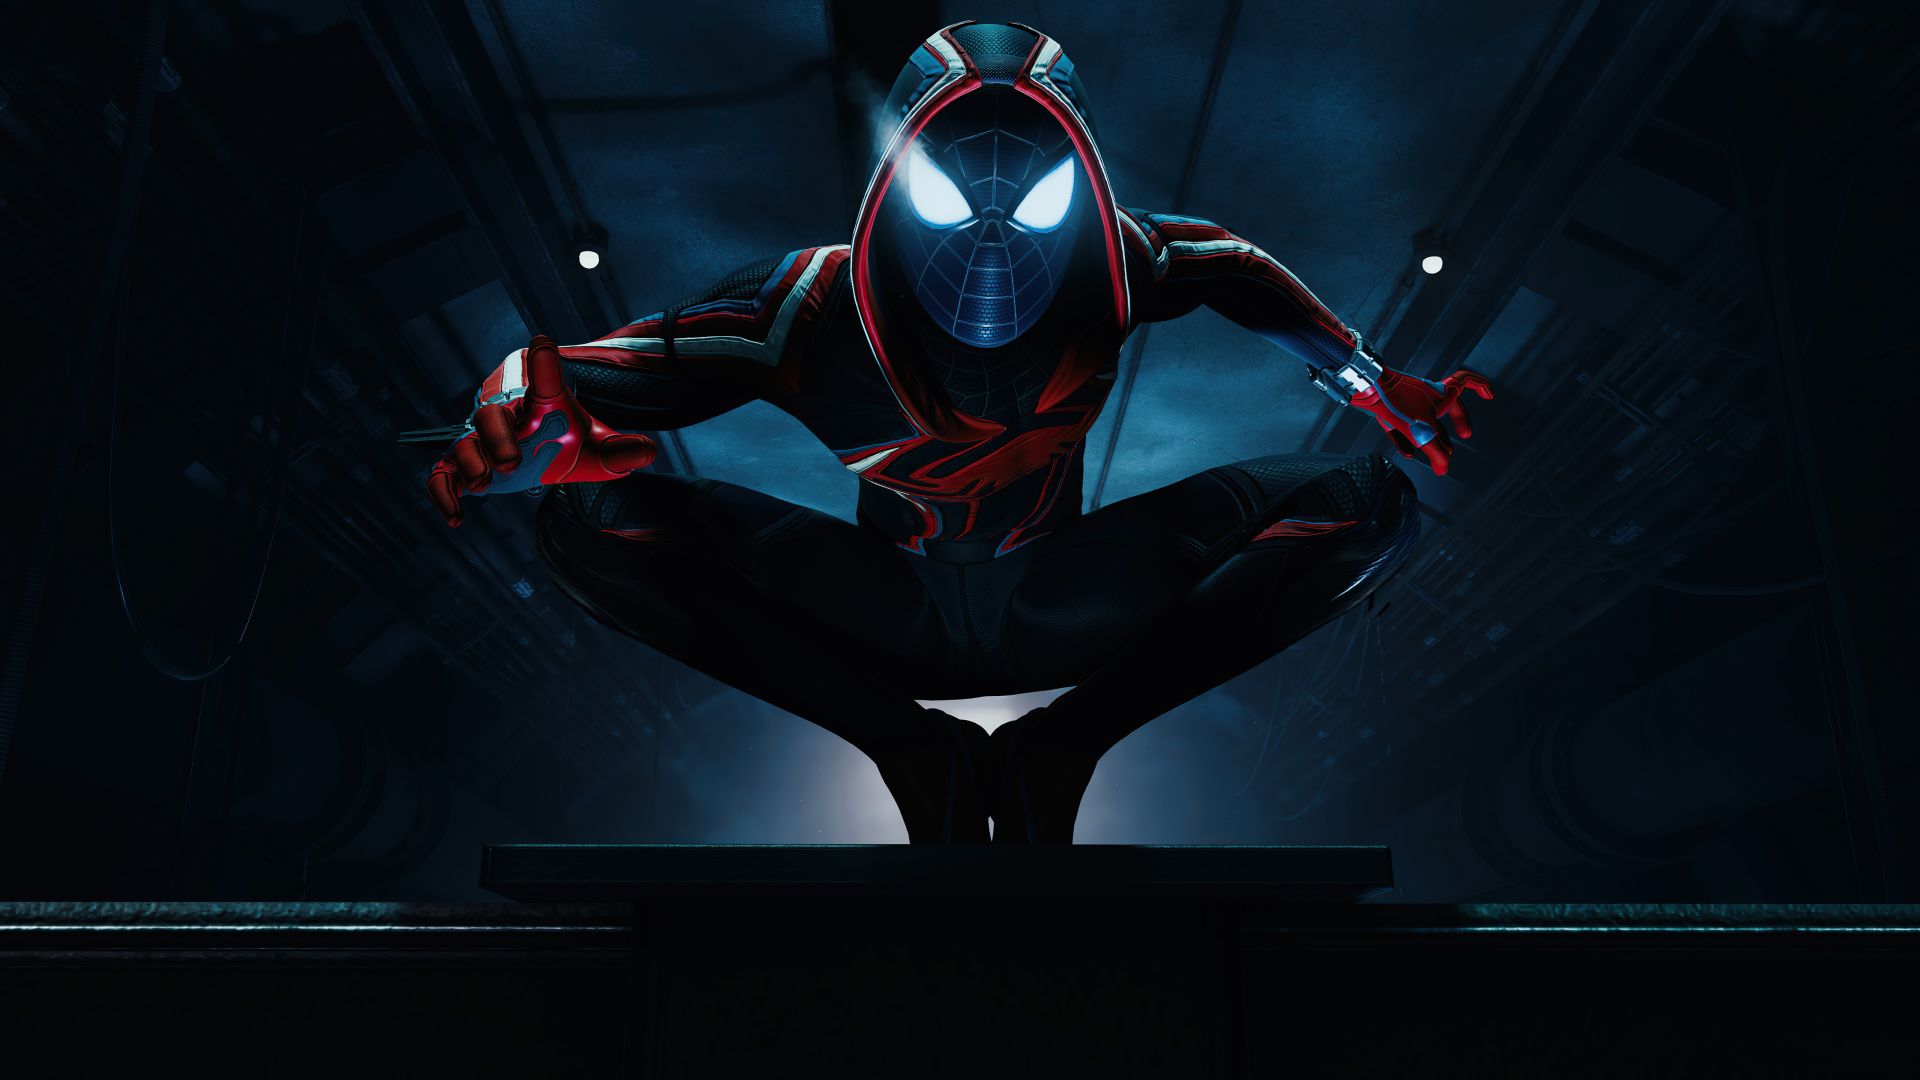 Hình nền Spider Man Miles Morales: Trang trí màn hình giải trí của bạn với hình nền siêu anh hùng phổ biến nhất hiện nay - Spider-Man Miles Morales. Xem ảnh liên quan để tải ngay về thôi nào!